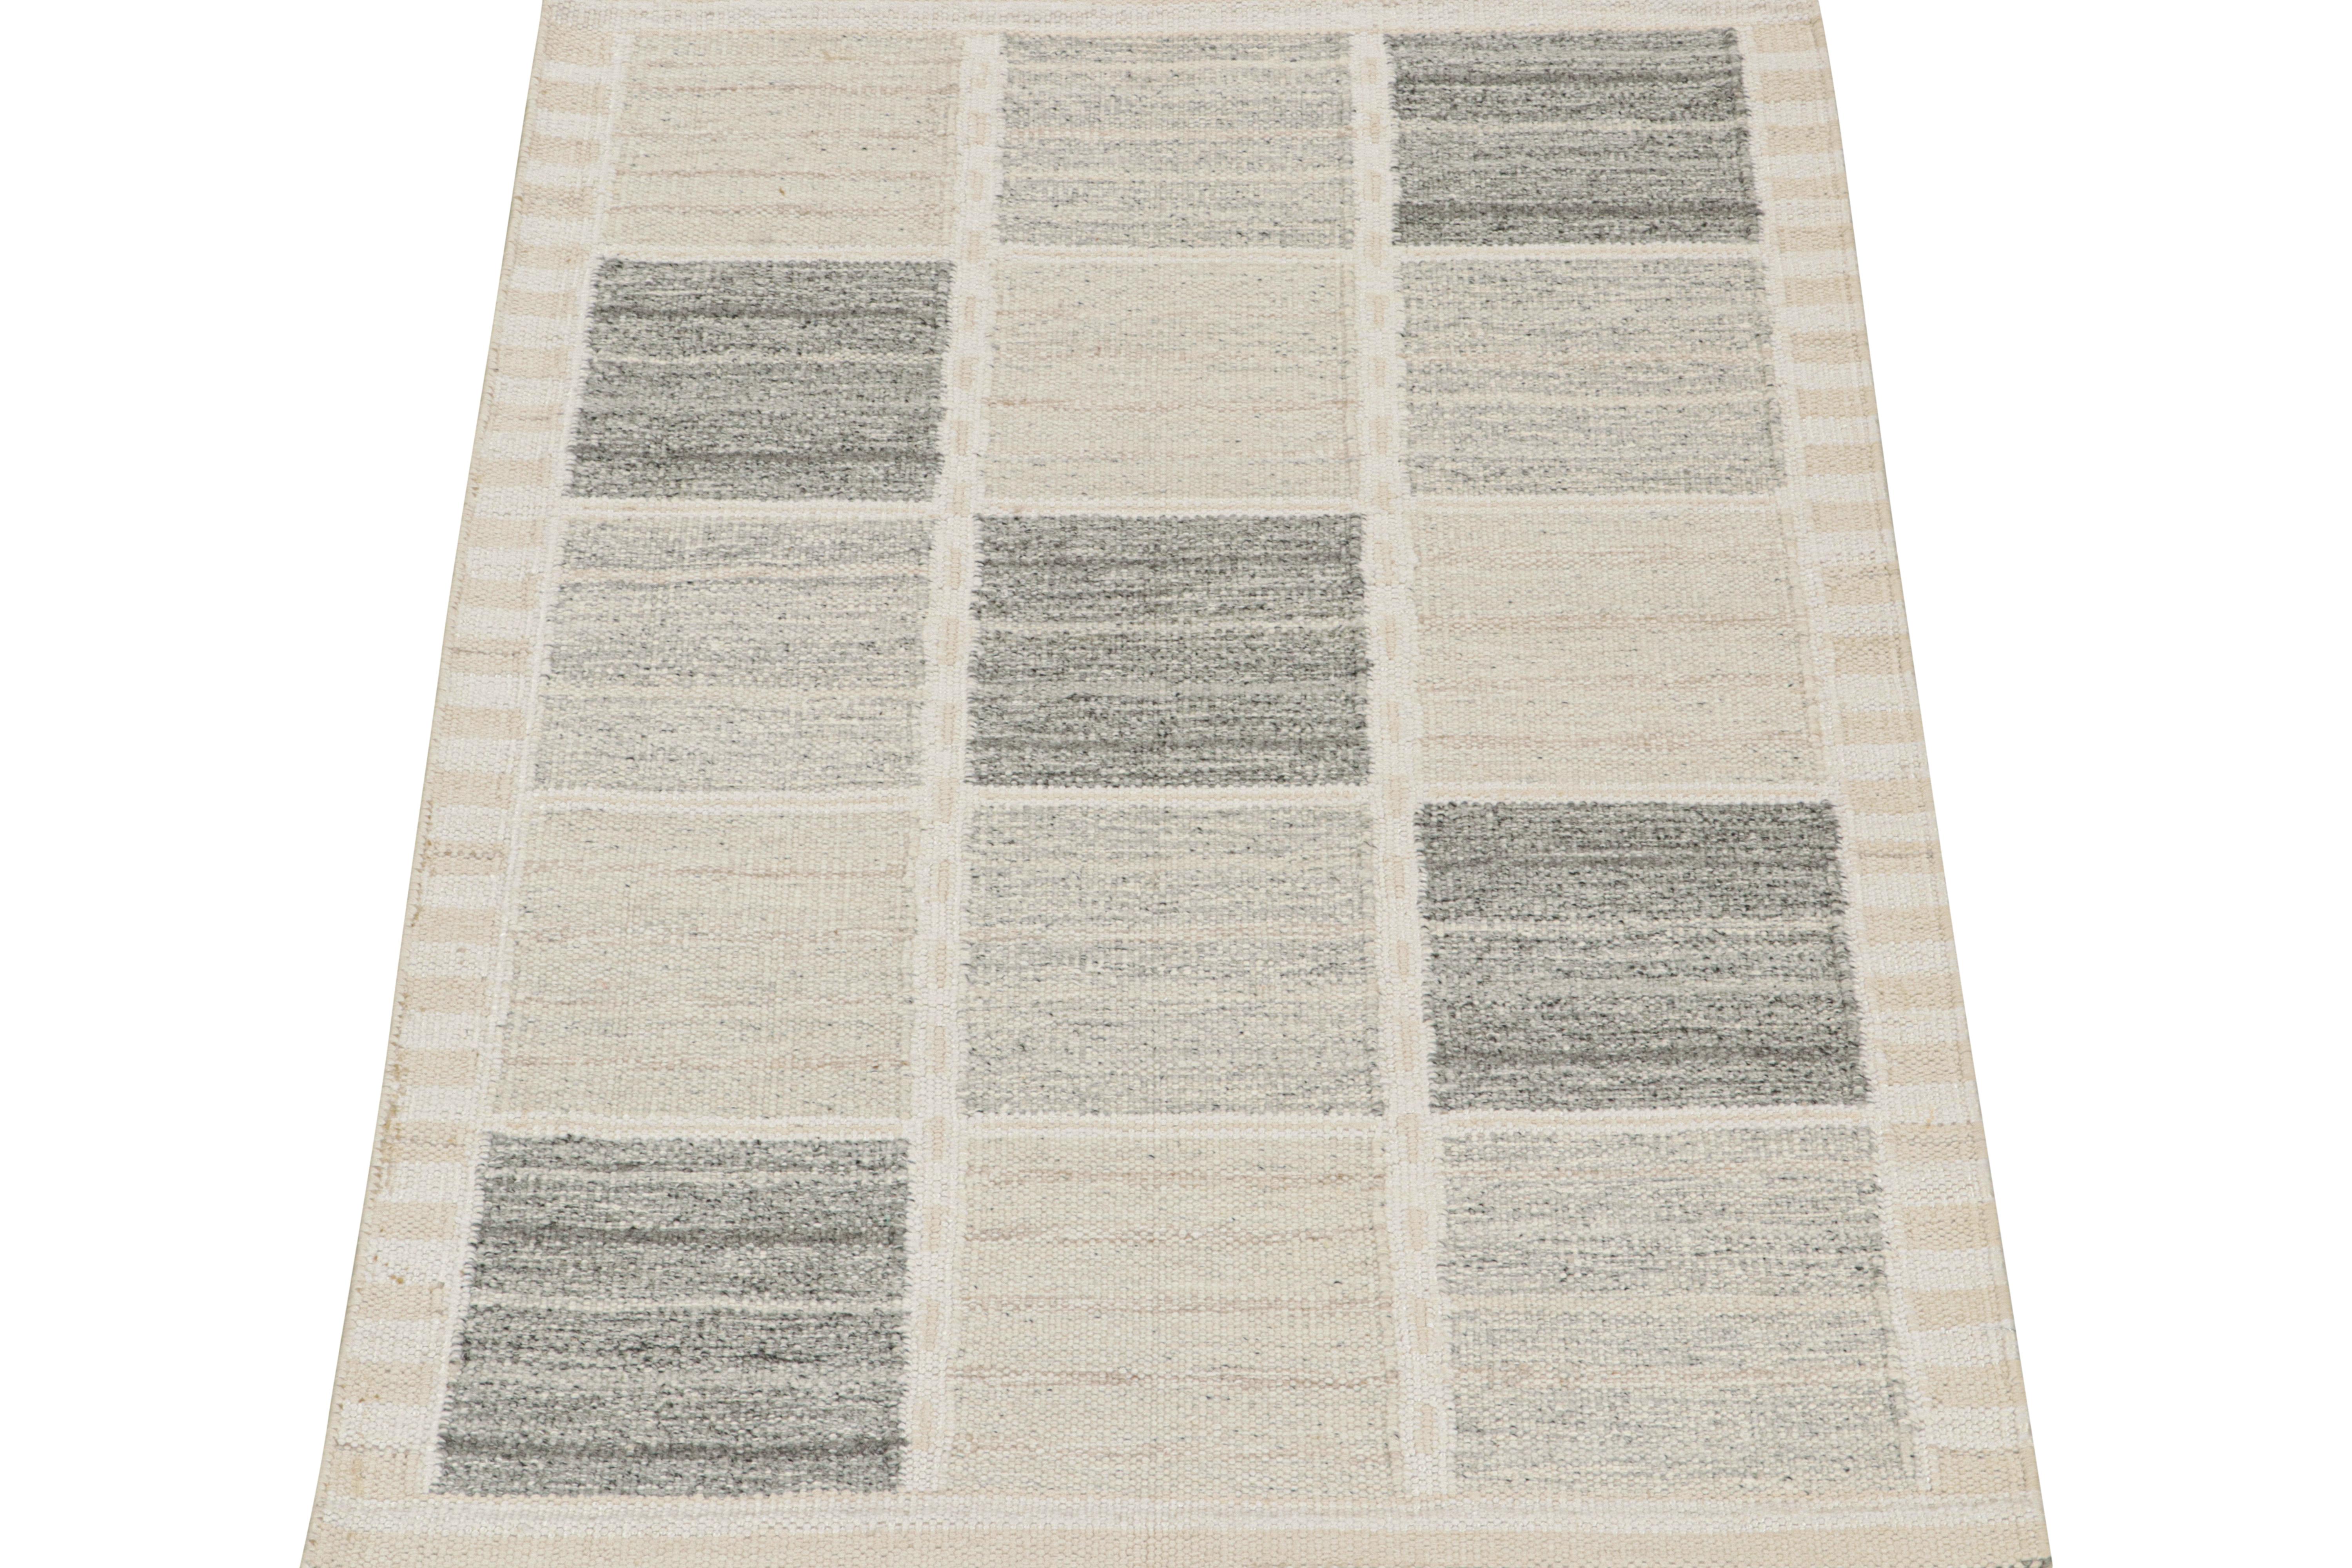 Dieser 4x6 Flachgewebe-Teppich ist ein Neuzugang in der skandinavischen Kilim-Kollektion von Rug & Kilim. Das aus Wolle und natürlichen Garnen handgewebte Design spiegelt eine zeitgenössische Interpretation des Rollakans aus der Mitte des